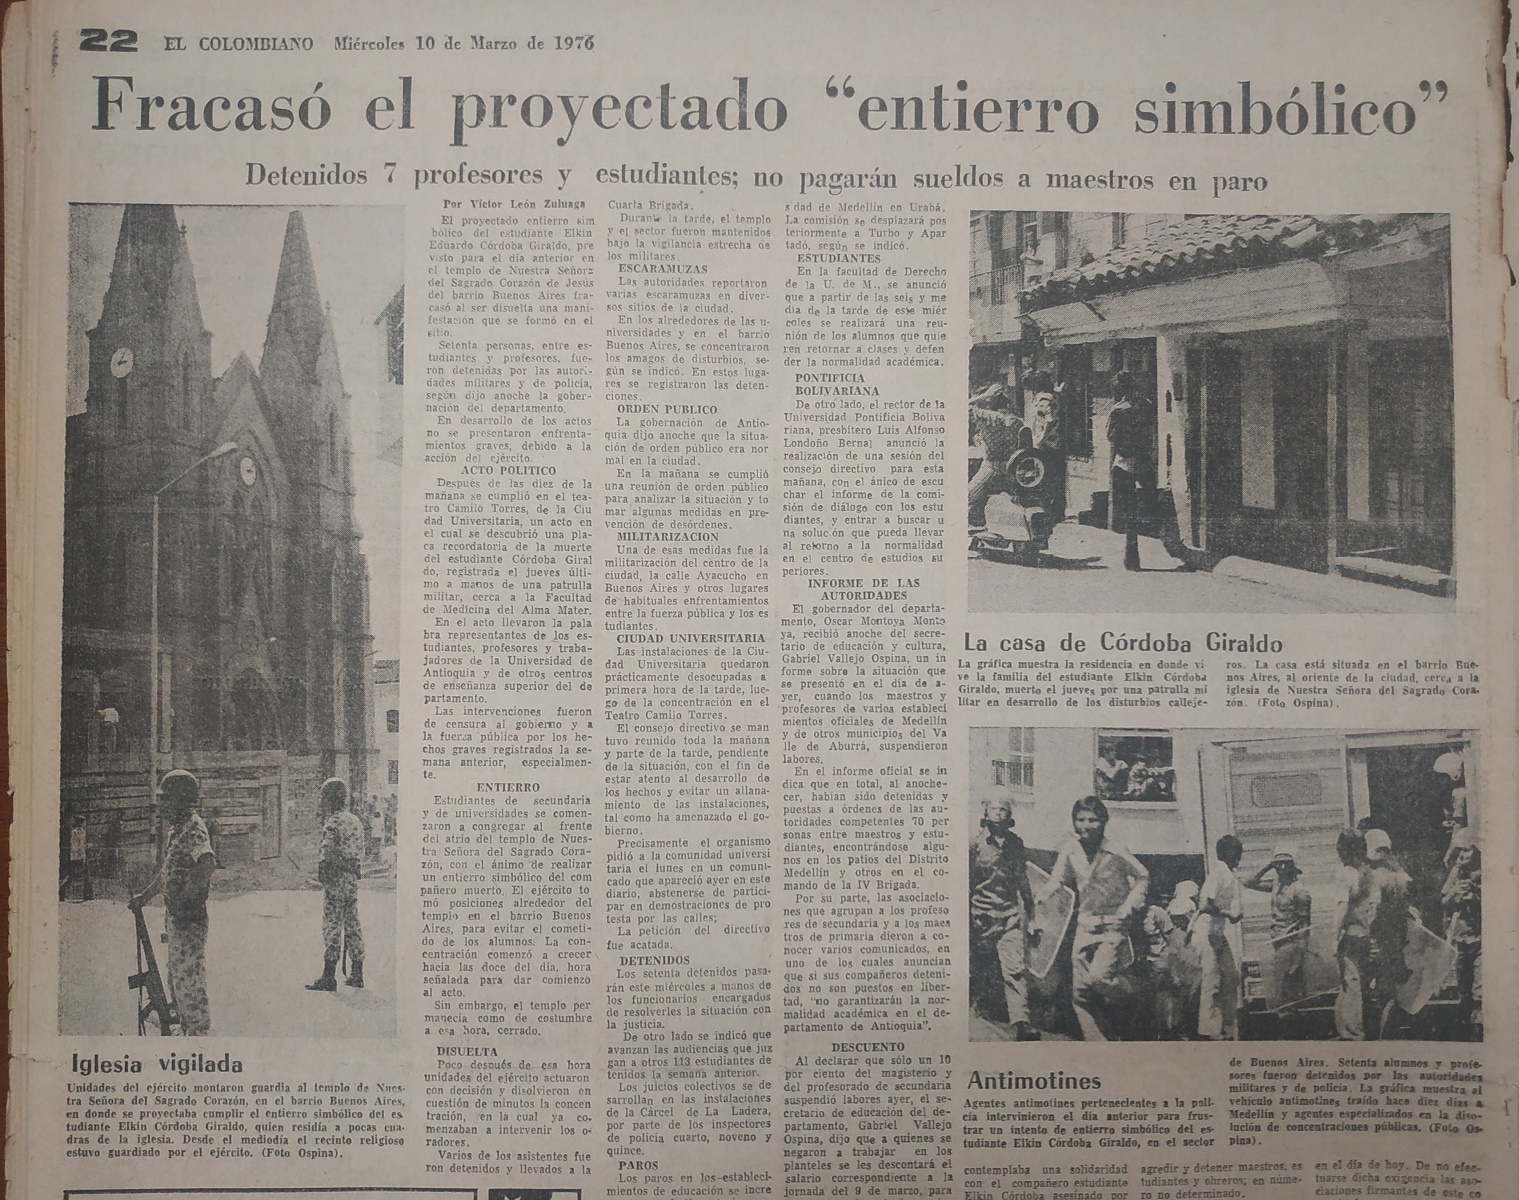 Fotografías tomadas de la edición del 10 de marzo de 1976 del periódico El Colombiano 